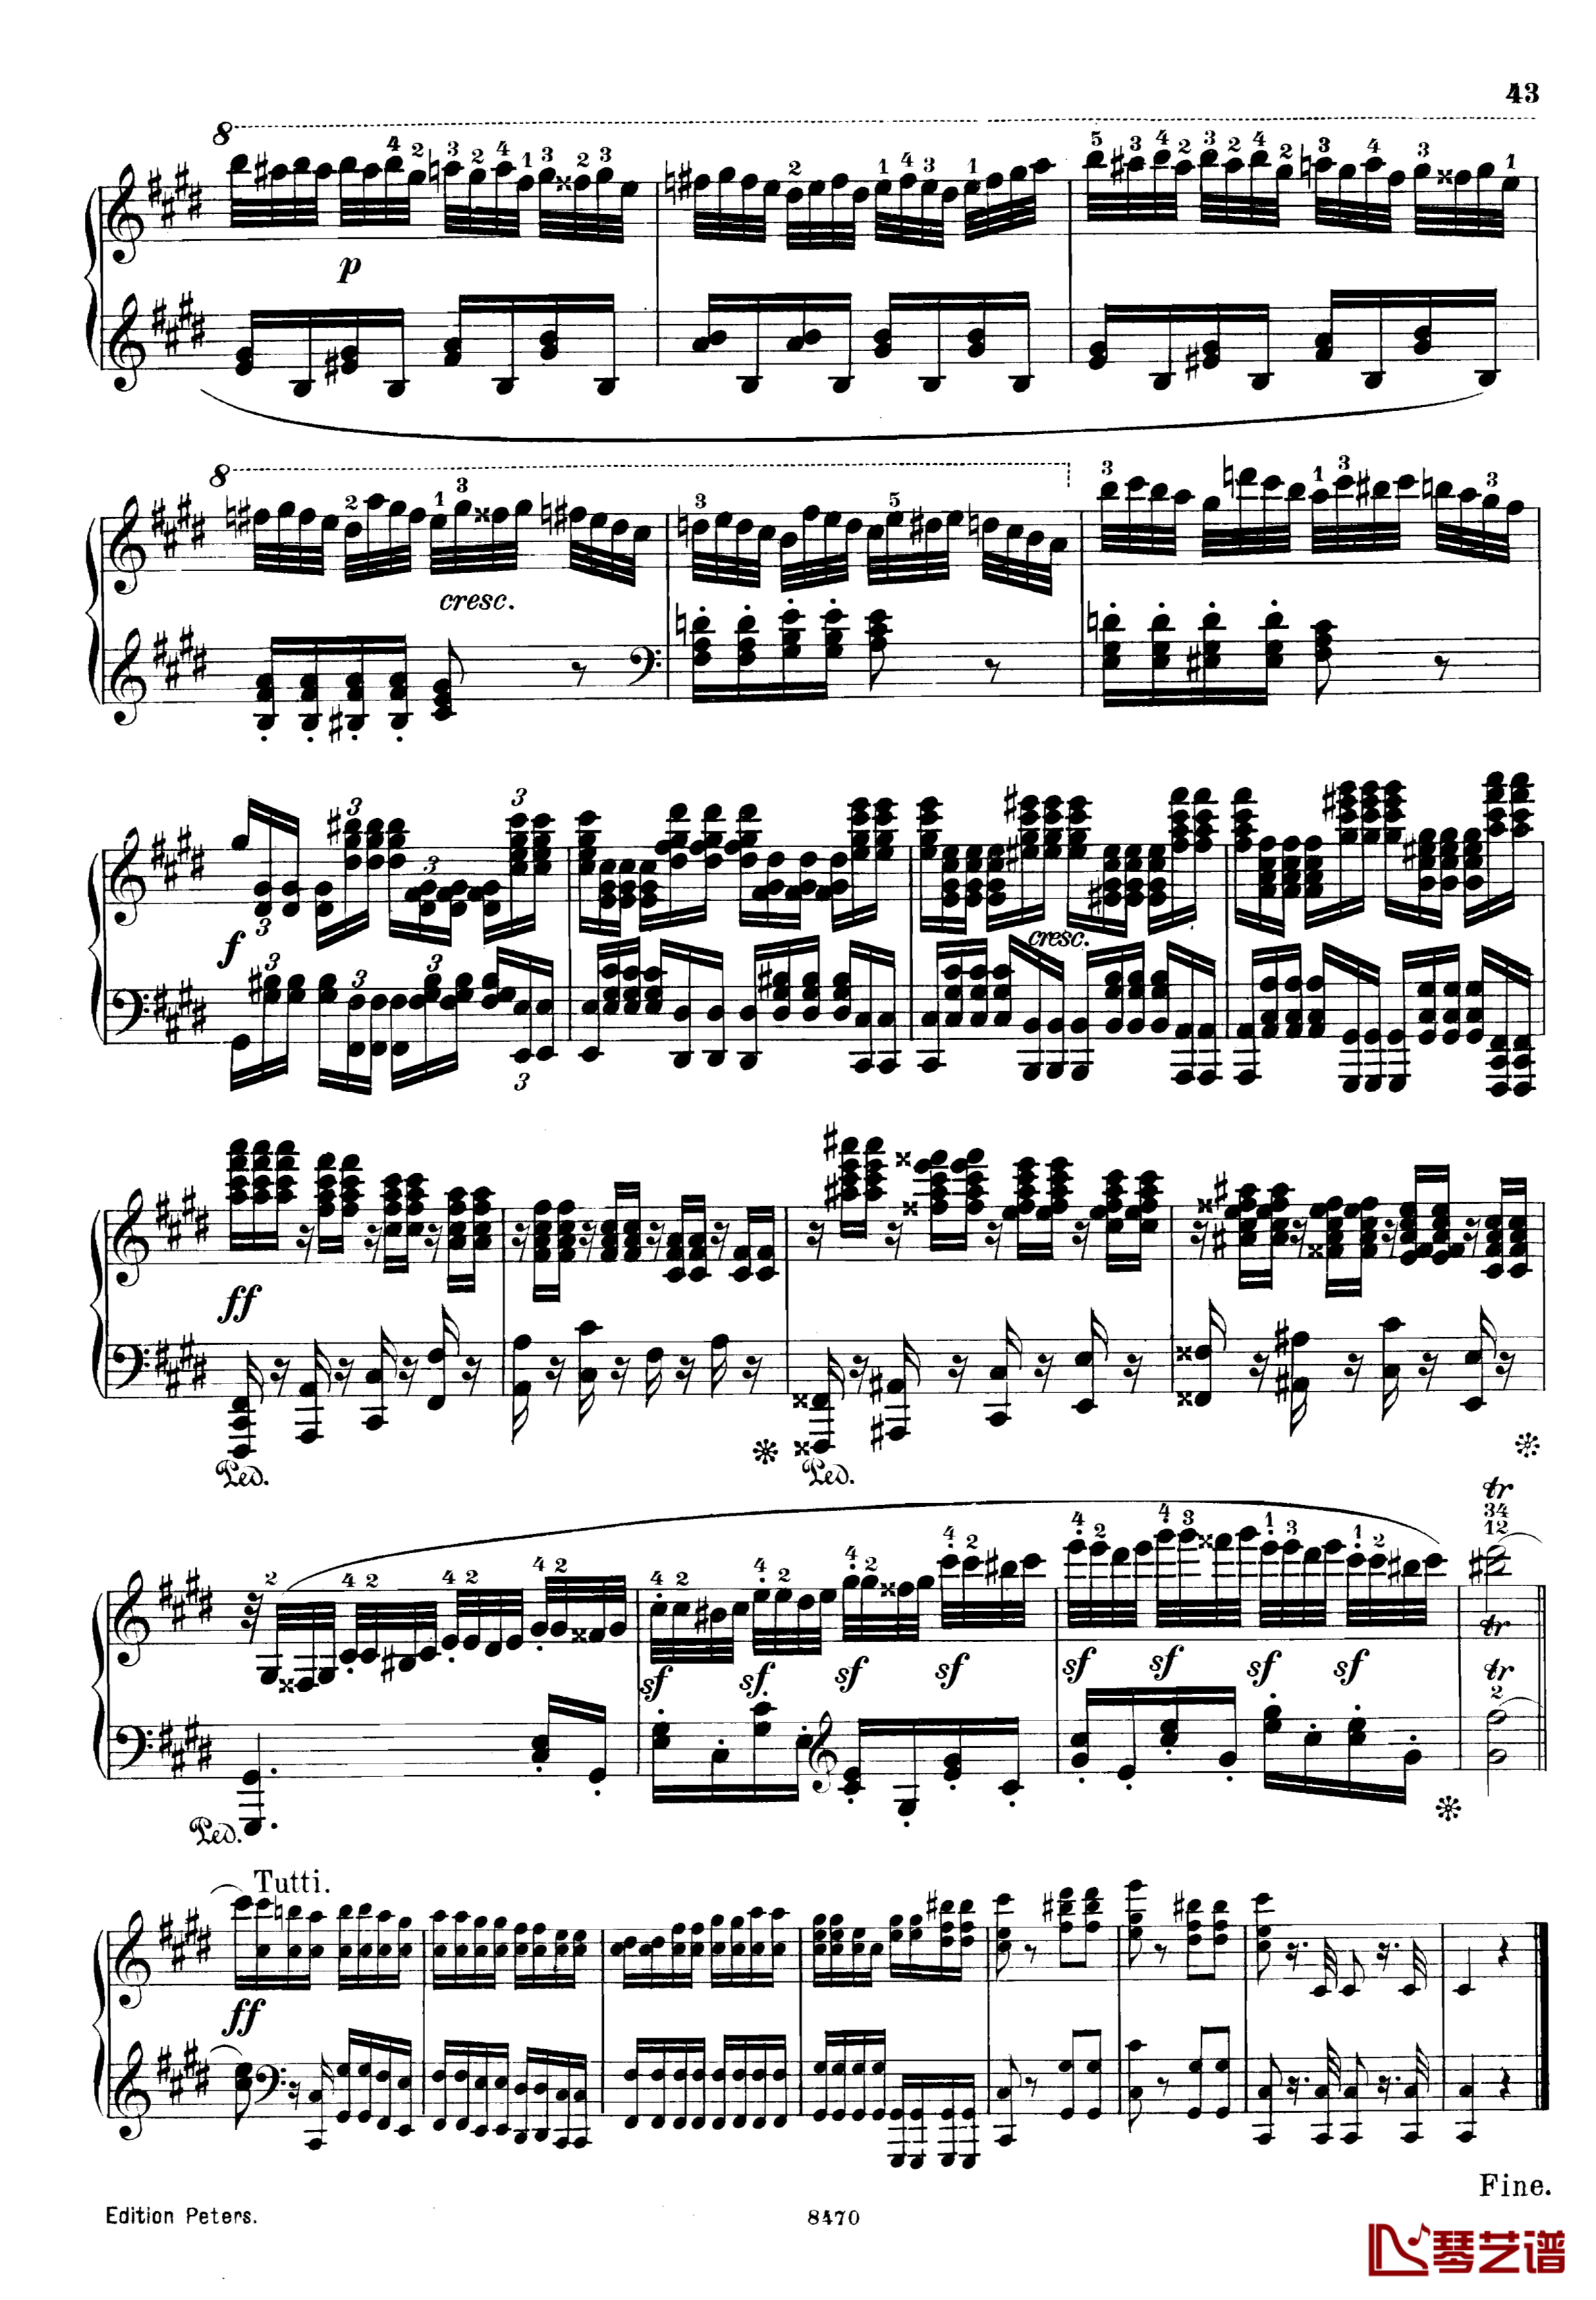 升c小调第三钢琴协奏曲Op.55钢琴谱-克里斯蒂安-里斯43